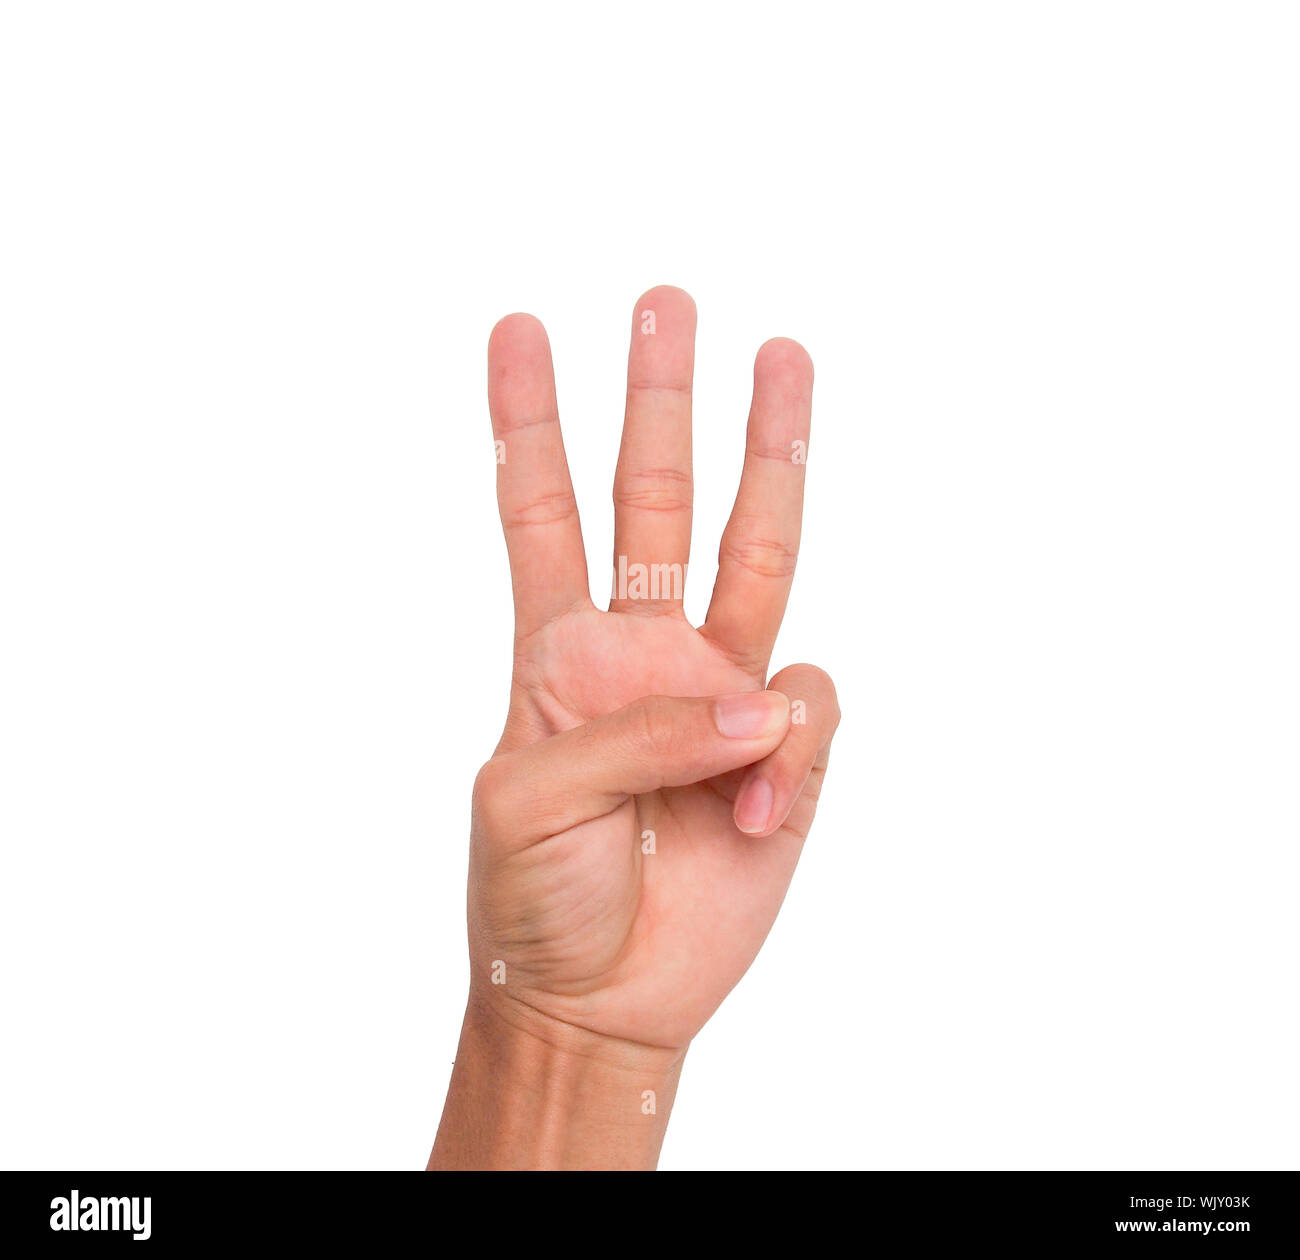 Imagen recortada de la mano mostrando tres dedos contra el fondo blanco. Foto de stock